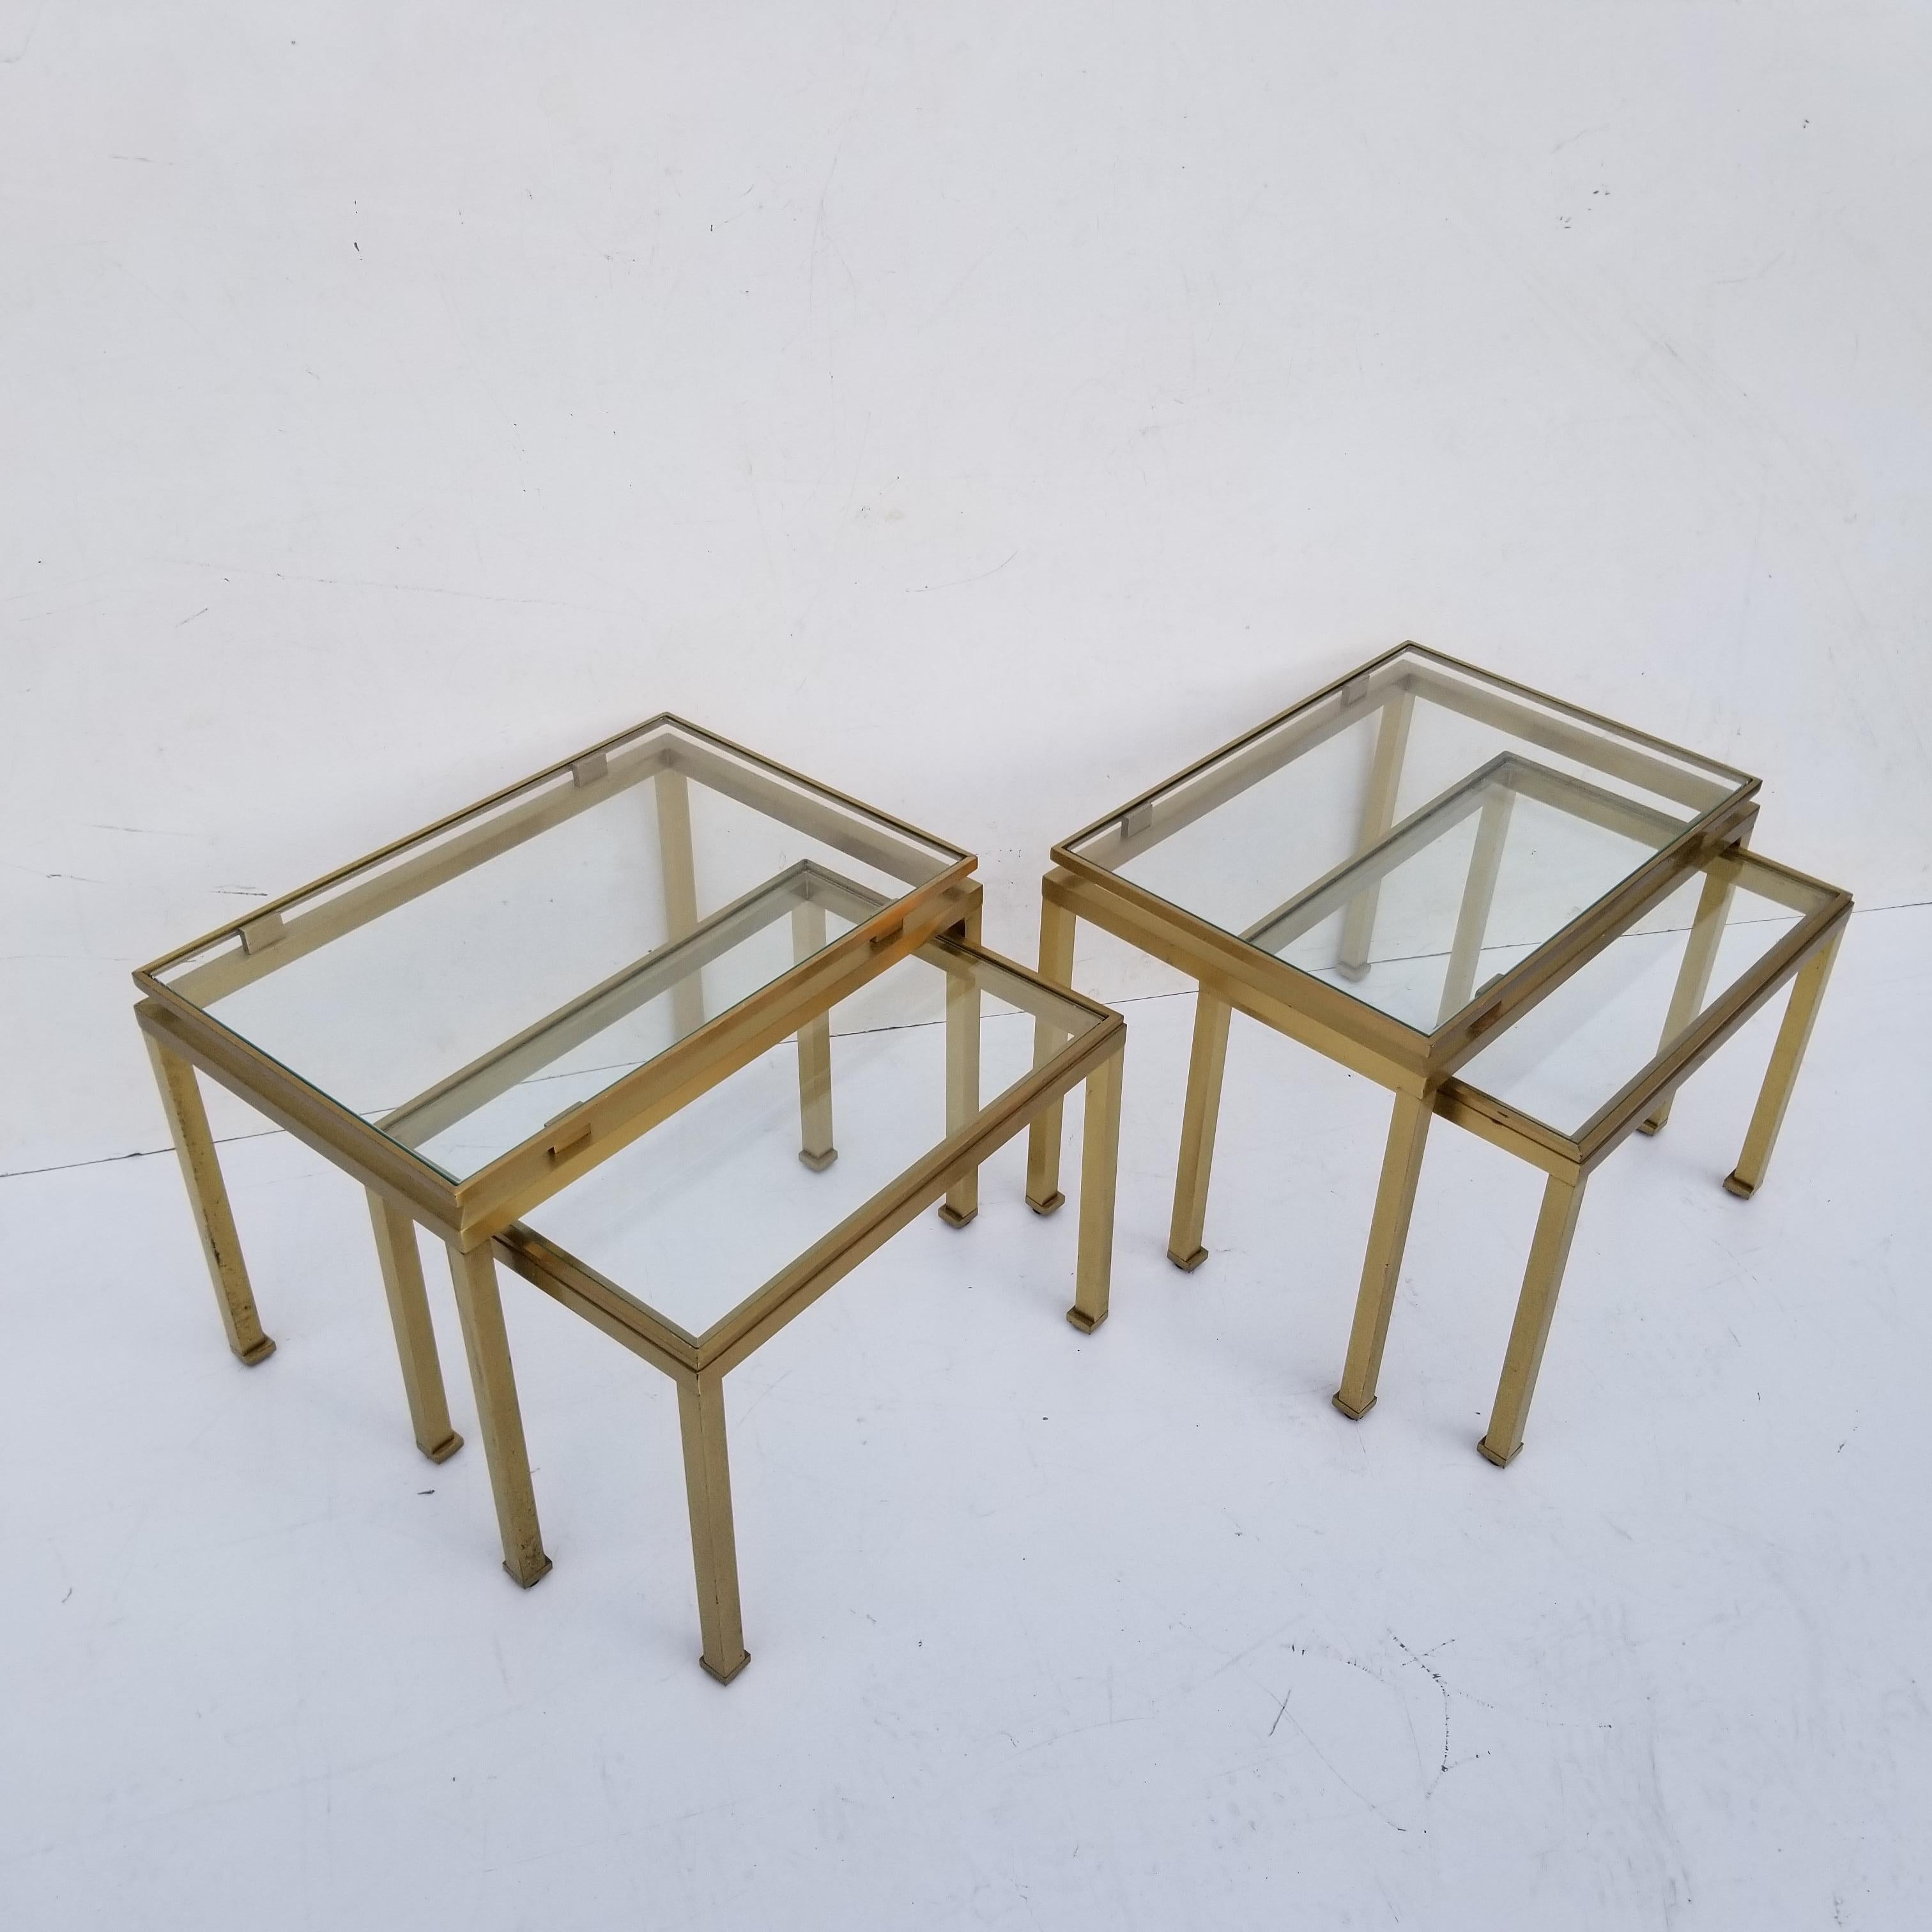 Ein Paar Guy Lefevre für Maison Jansen Beistelltisch, Schachteltisch, schwebende Glasplatte.
Niedriger Tisch 17 /13/13
Top-Tabelle 20/14/15.